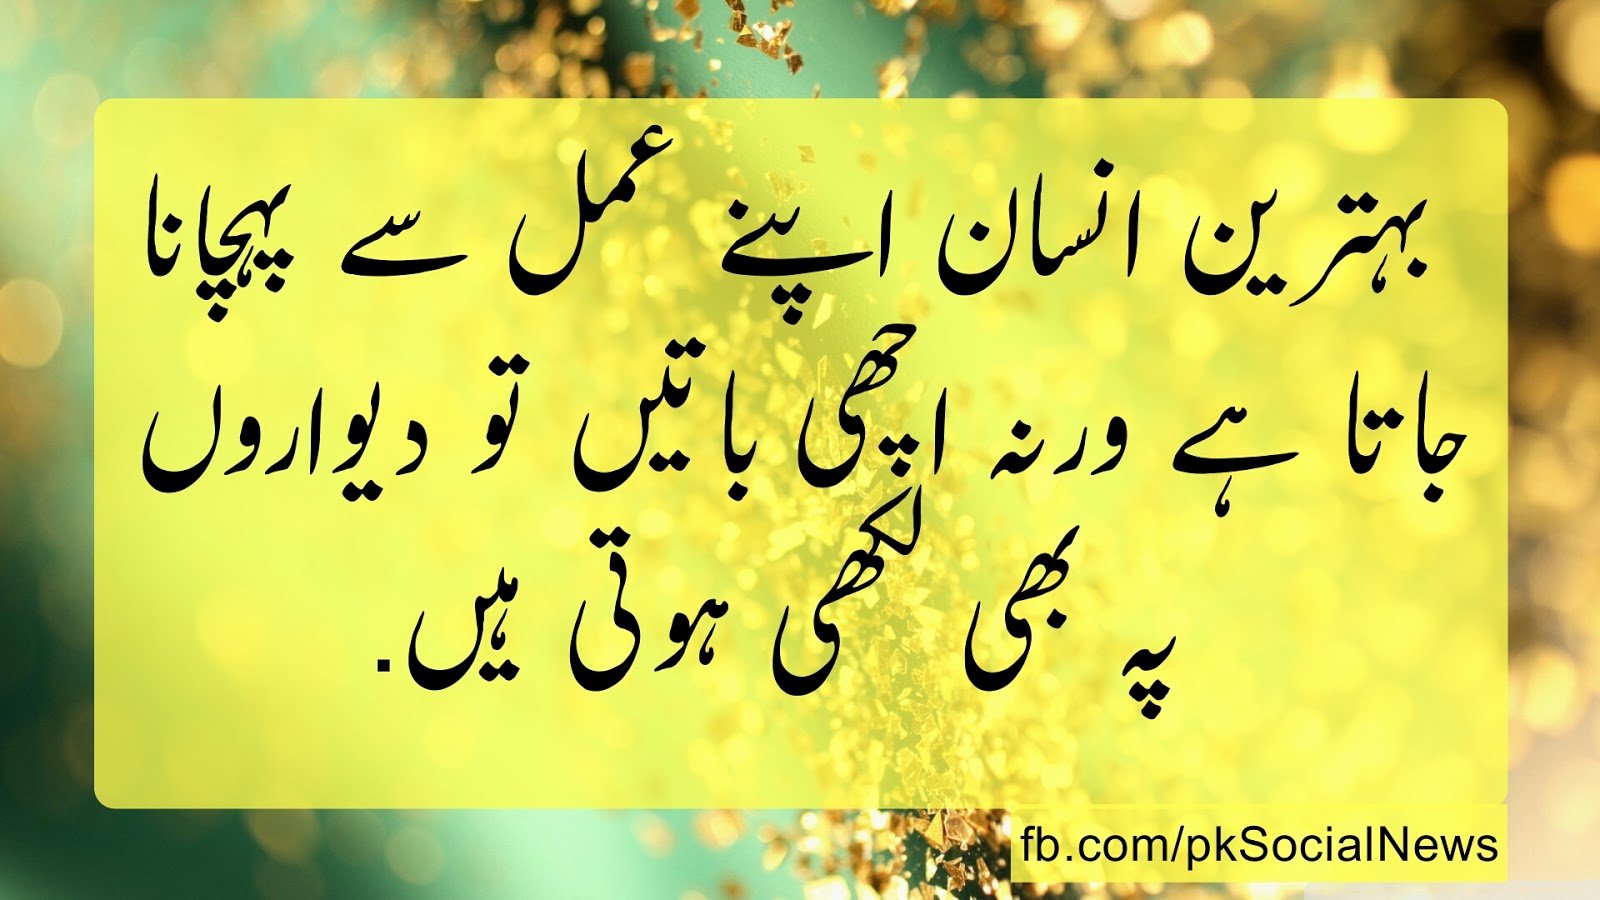 30 urdu sayings urdu love quotes urdu funny quotes urdu sad quotes urdu